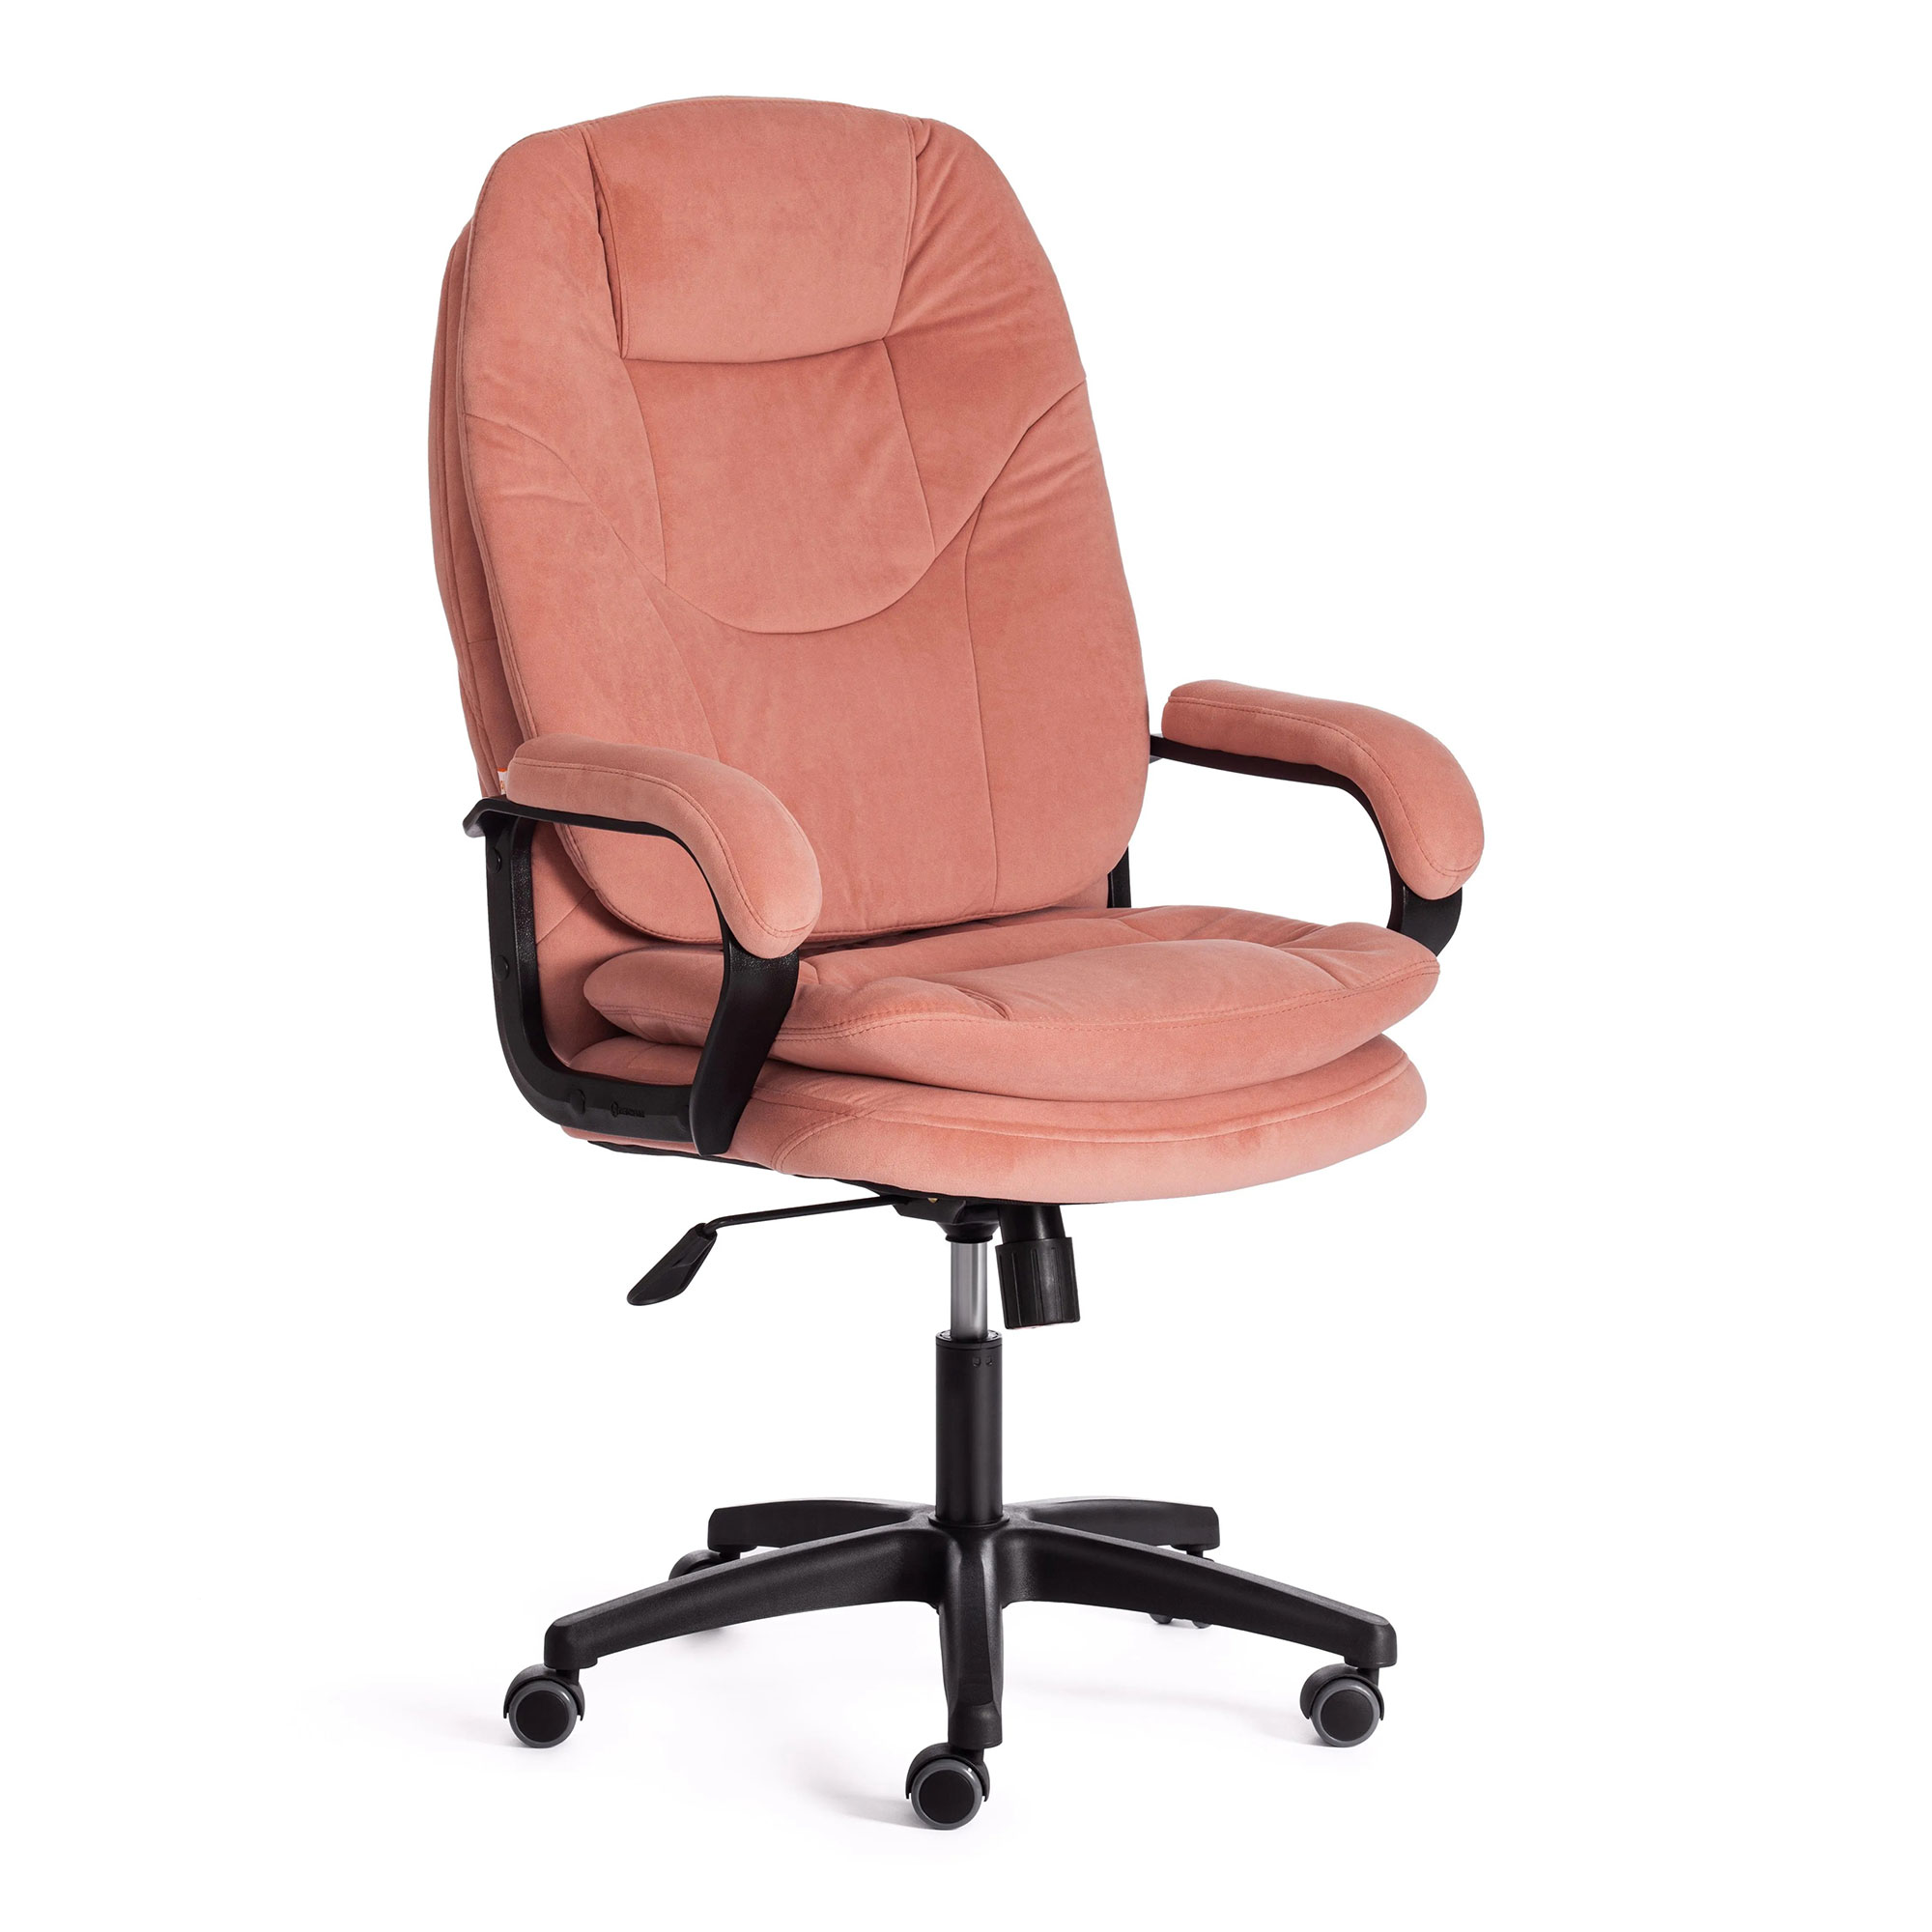 Компьютерное кресло TC Comfort розовое 66х46х133 см (19385) набор посуды zeidan 8 предметов z 50814 comfort